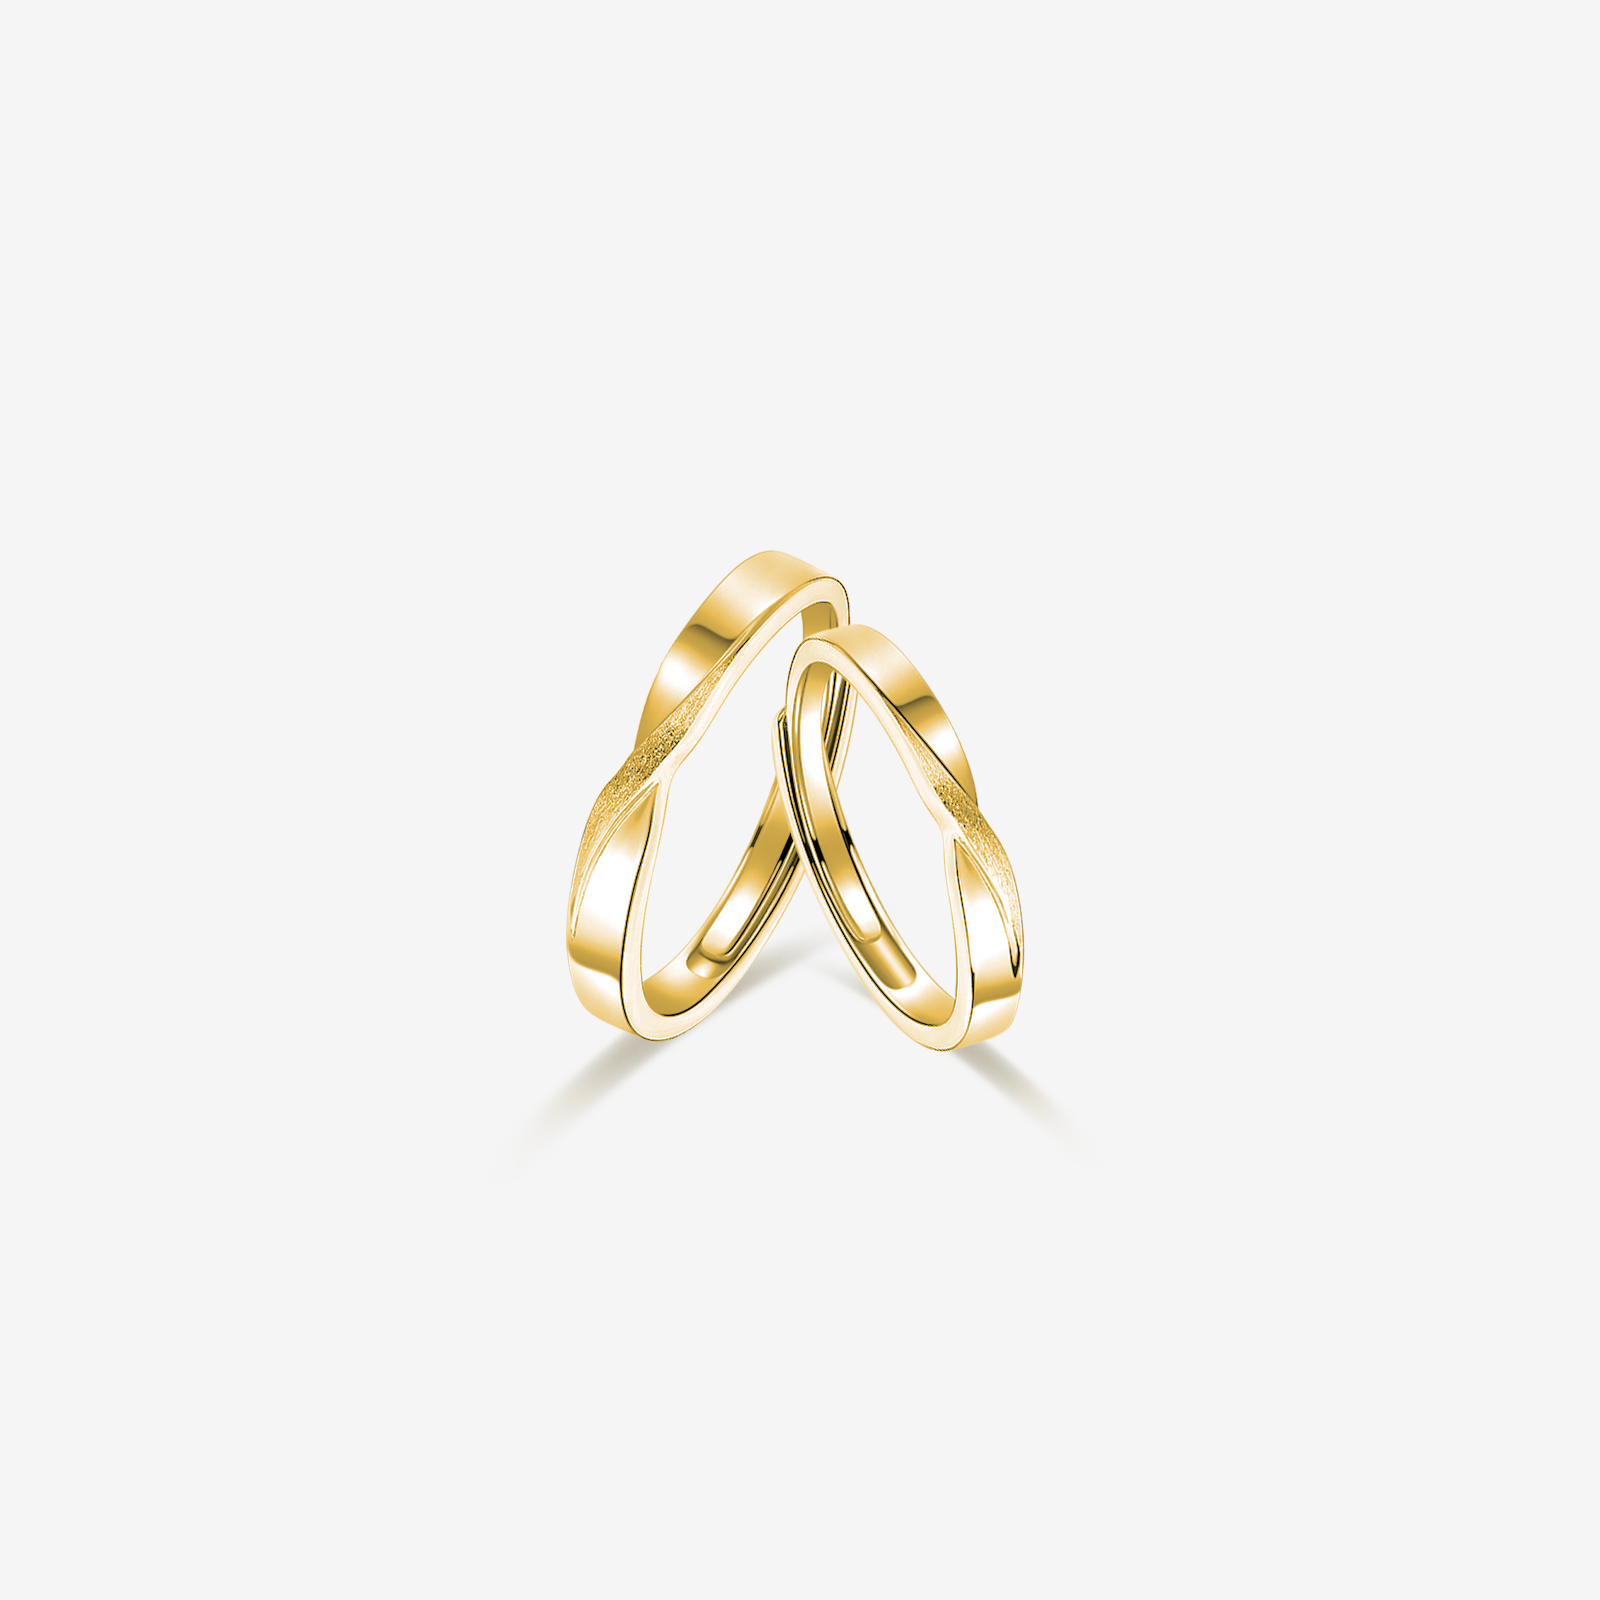 "Mobius Loop" Love Infinity Sterling Silver Rings